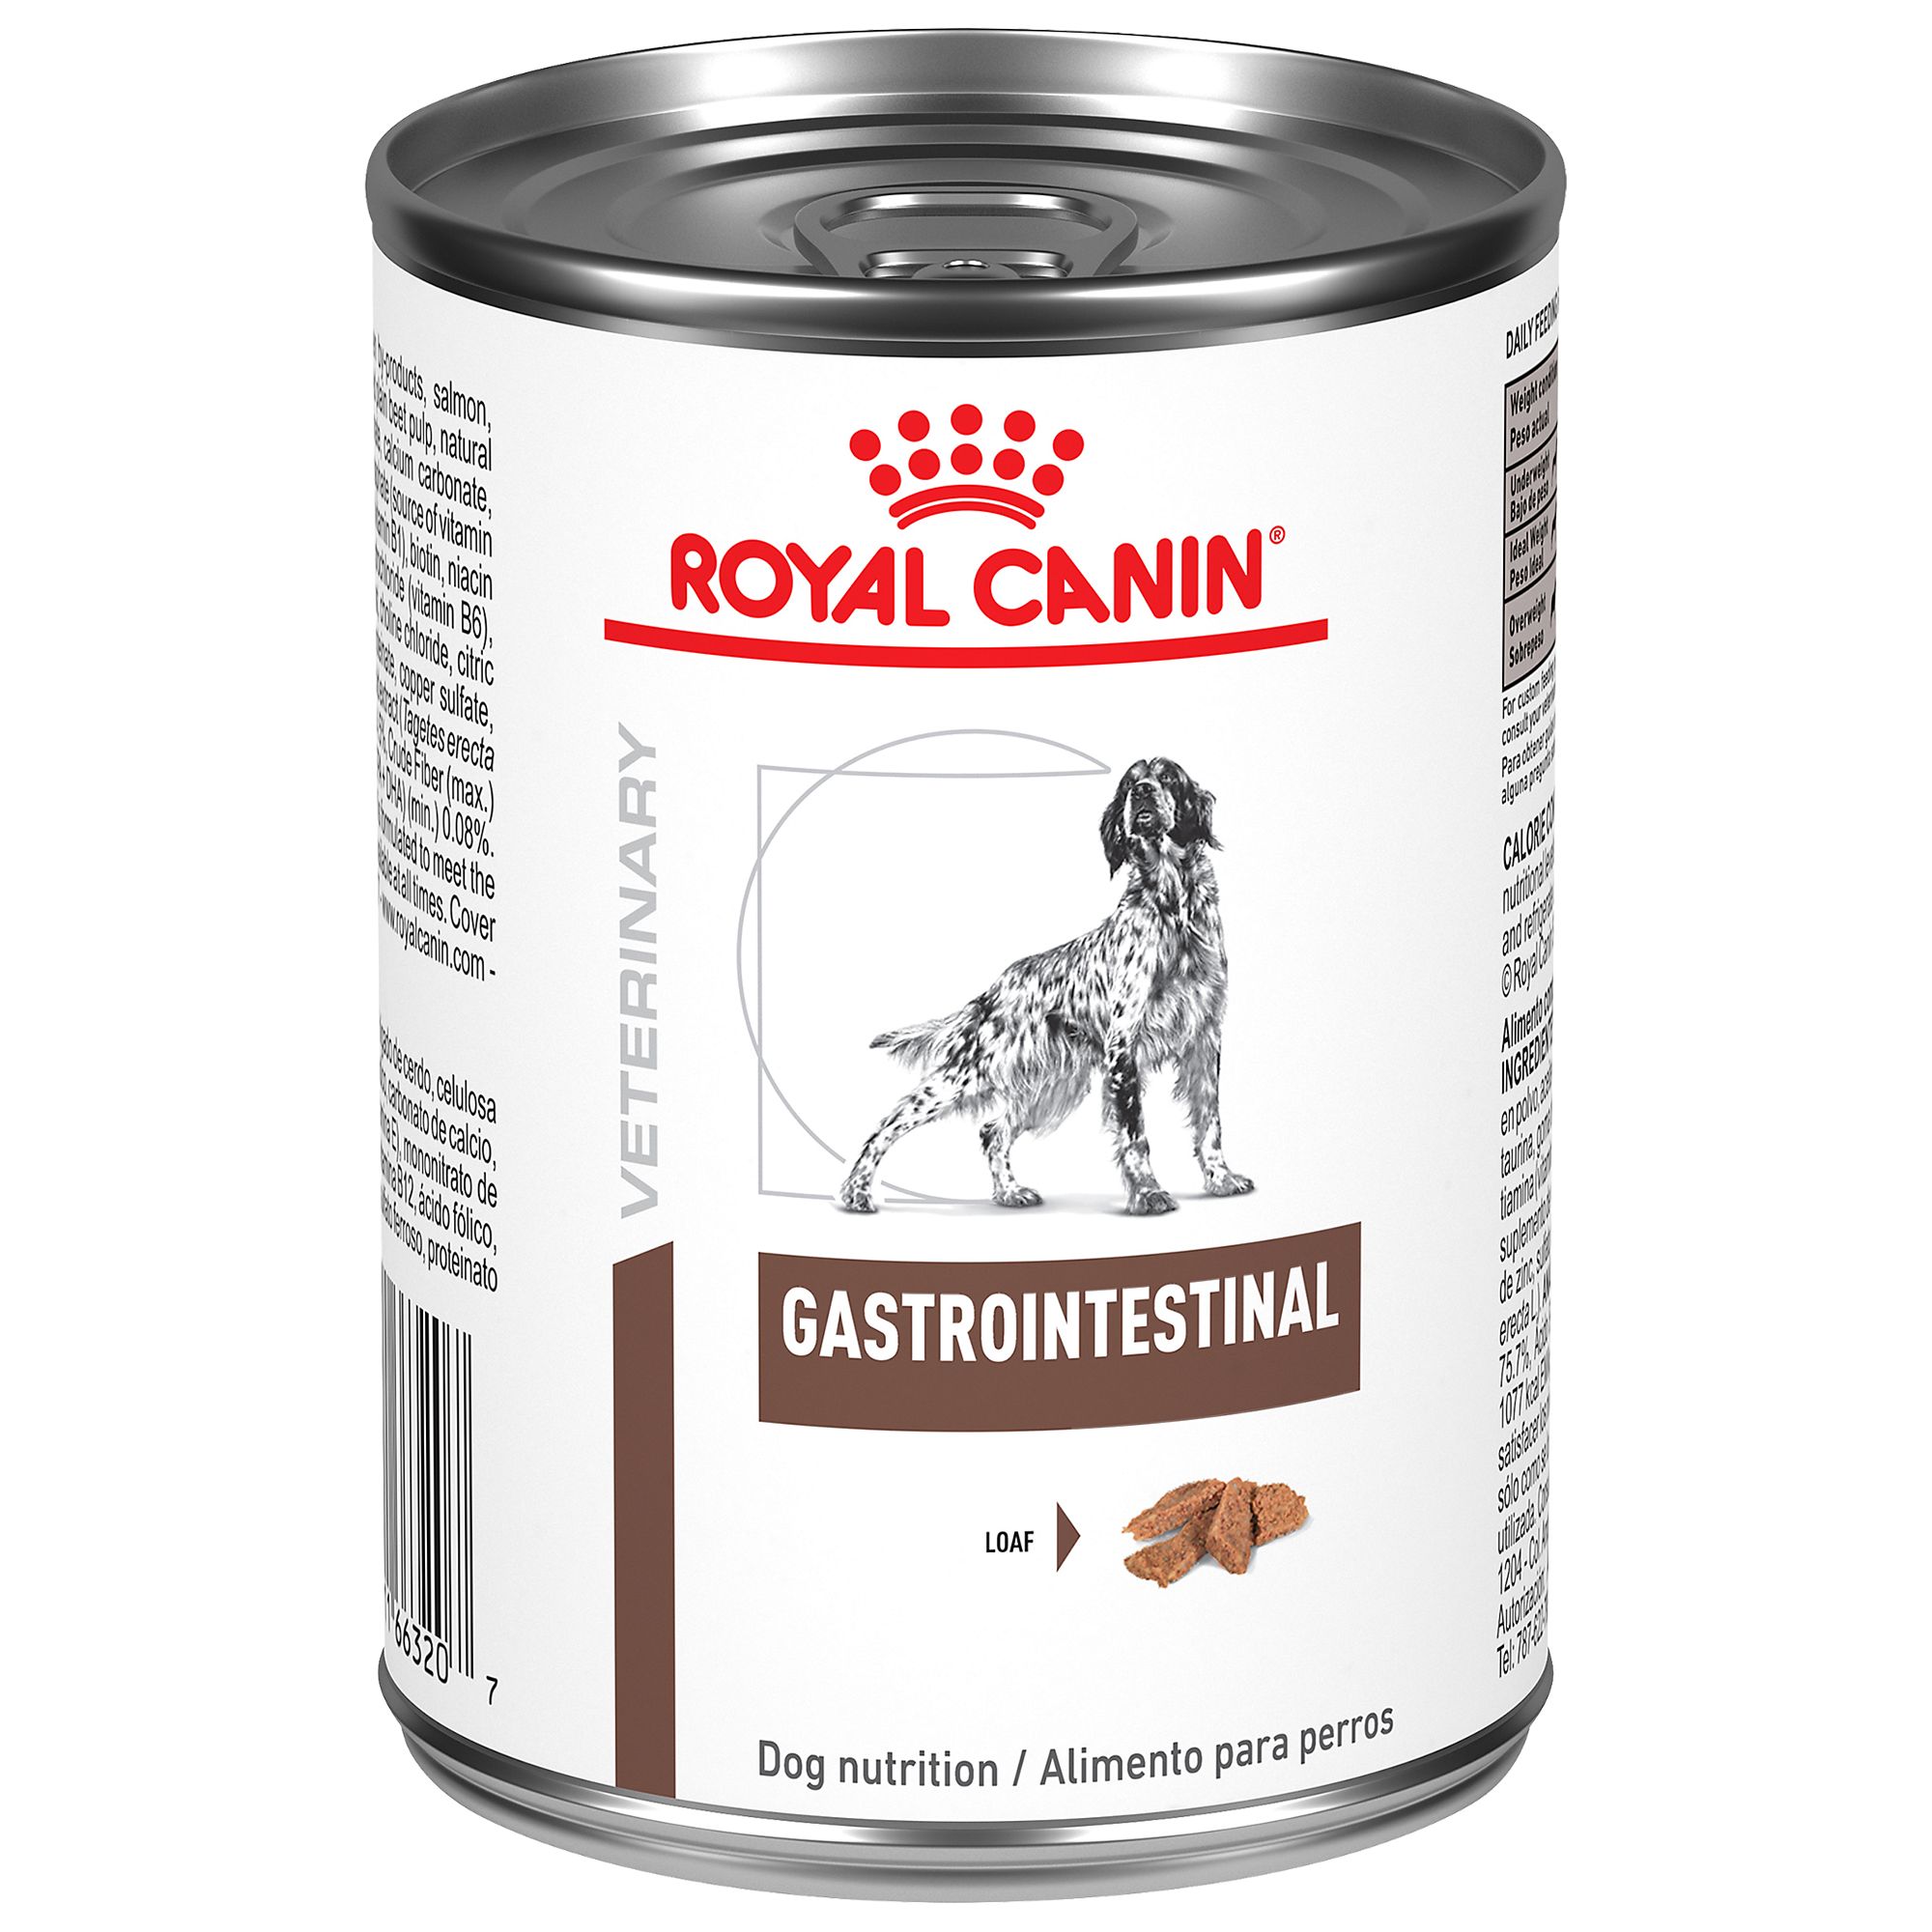 petsmart royal canin bulldog